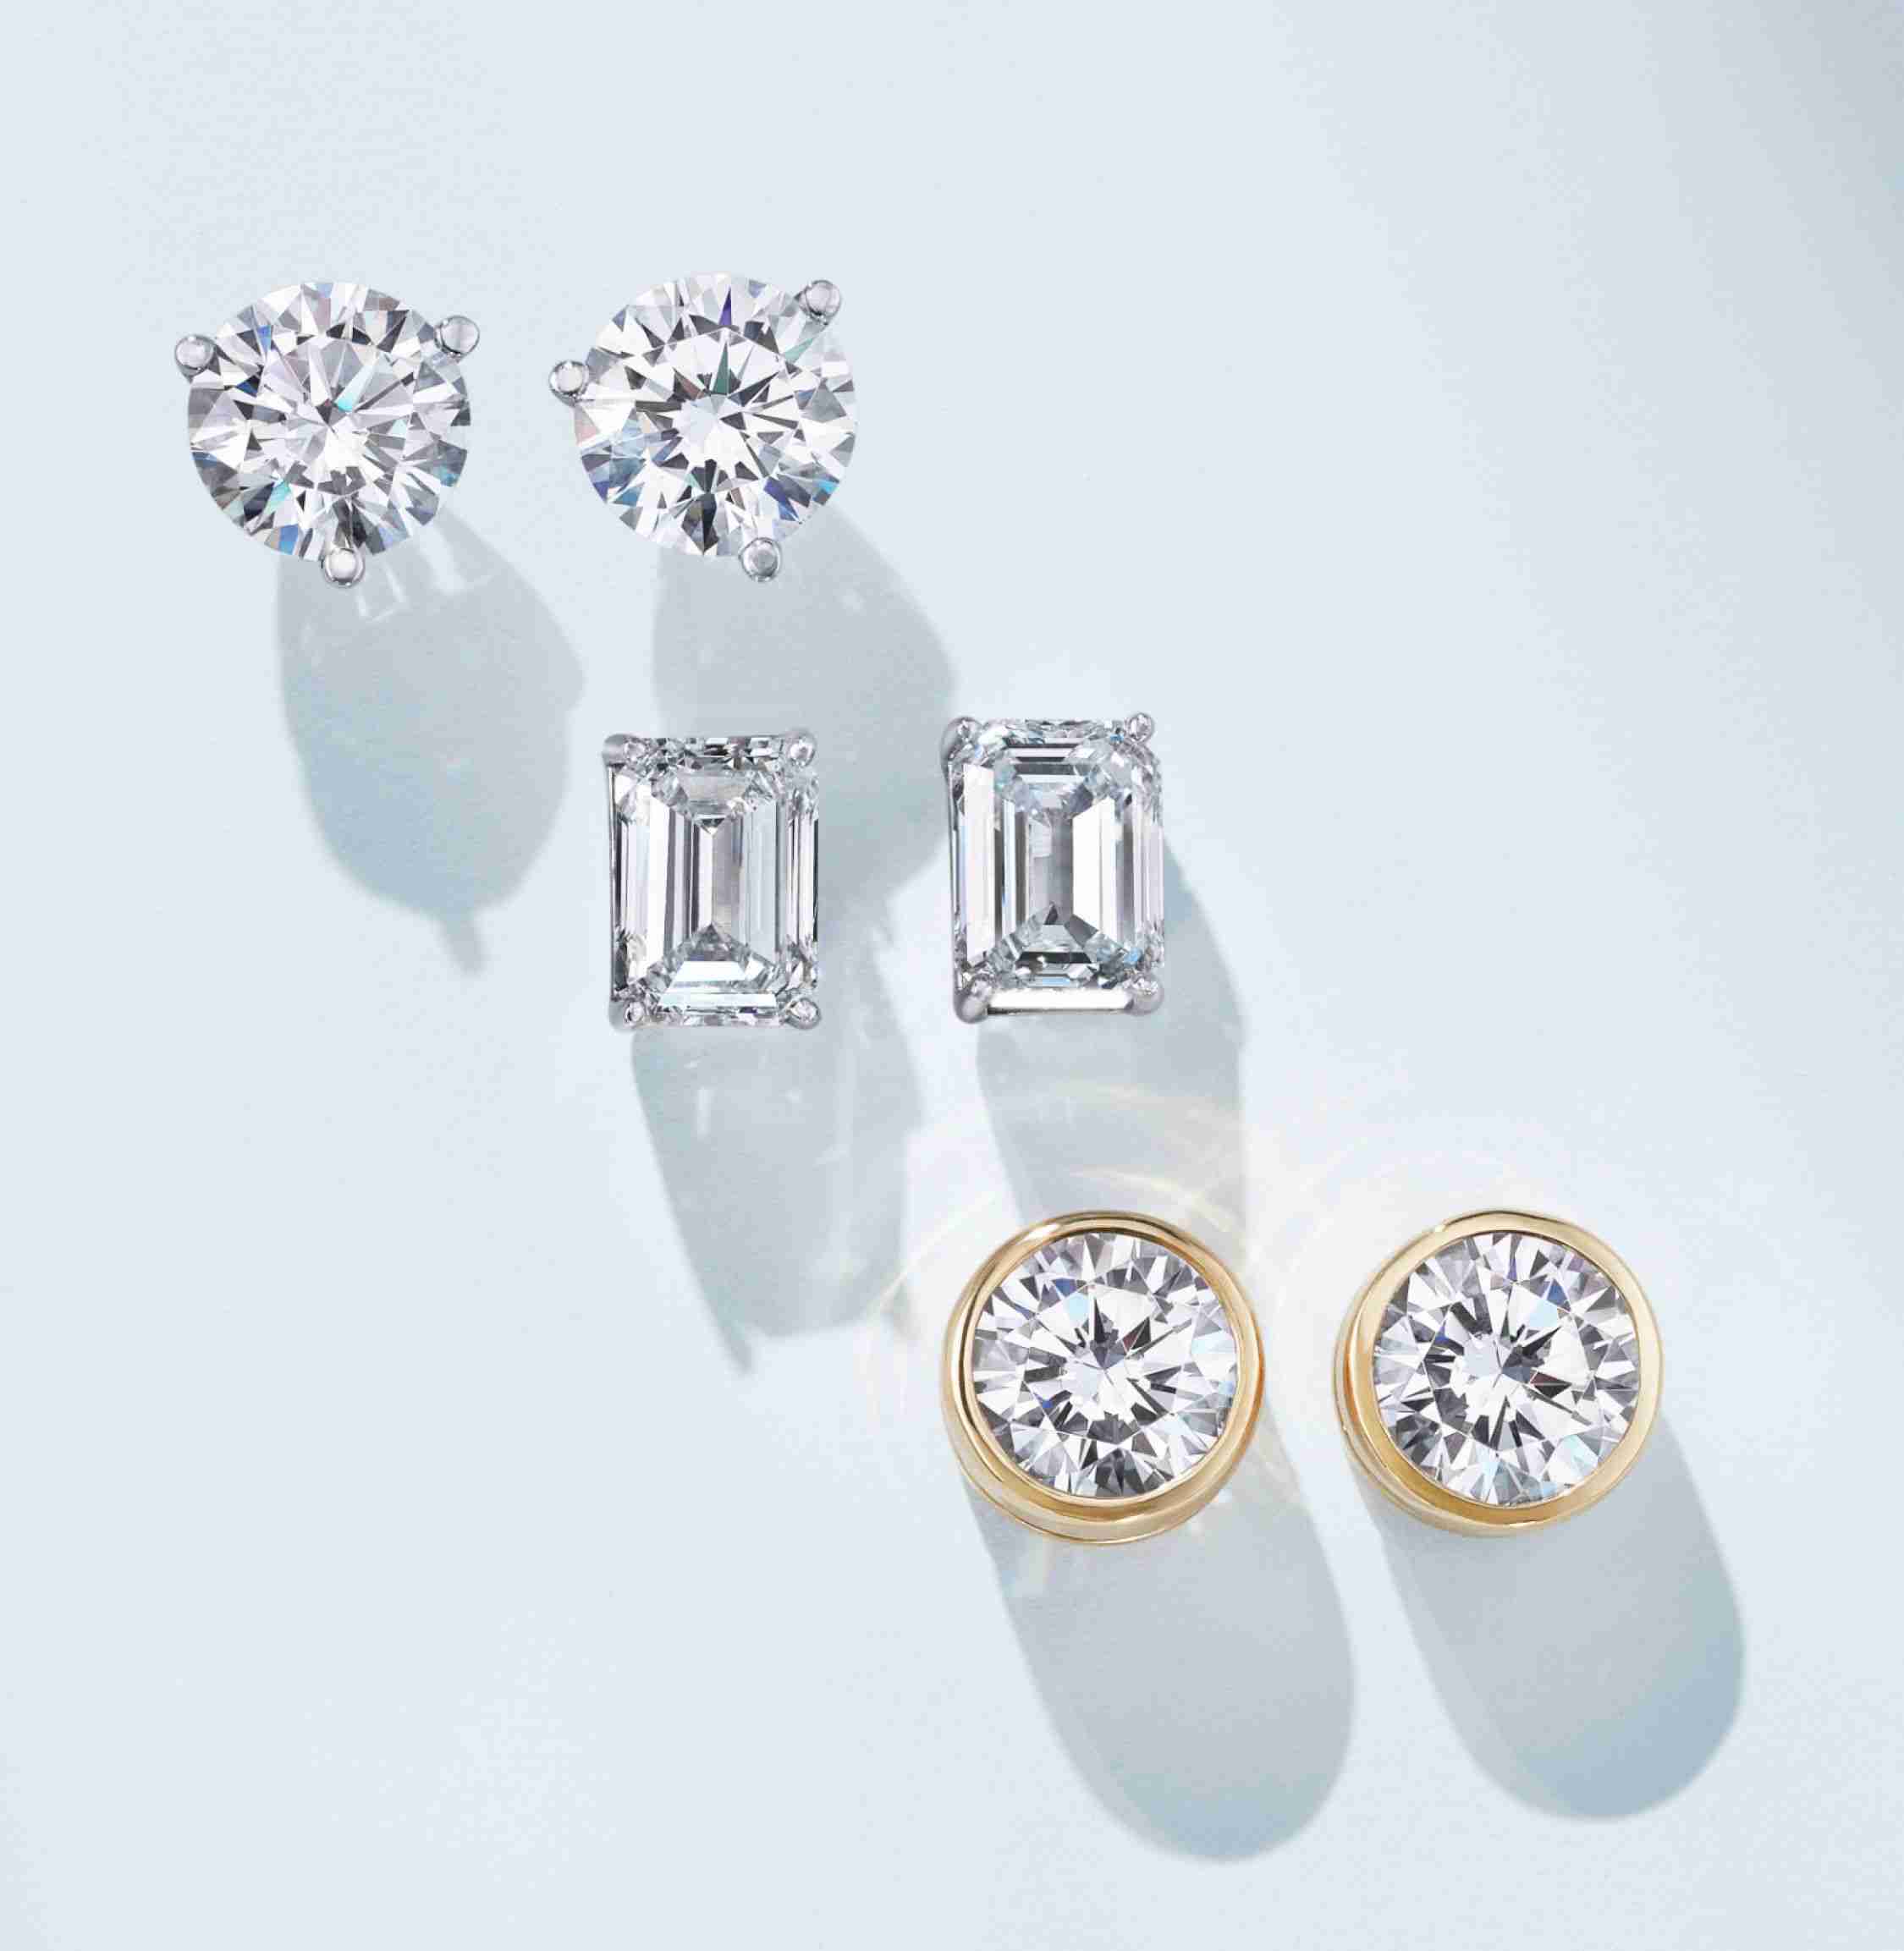 Diamond stud earrings in a variety of settings.